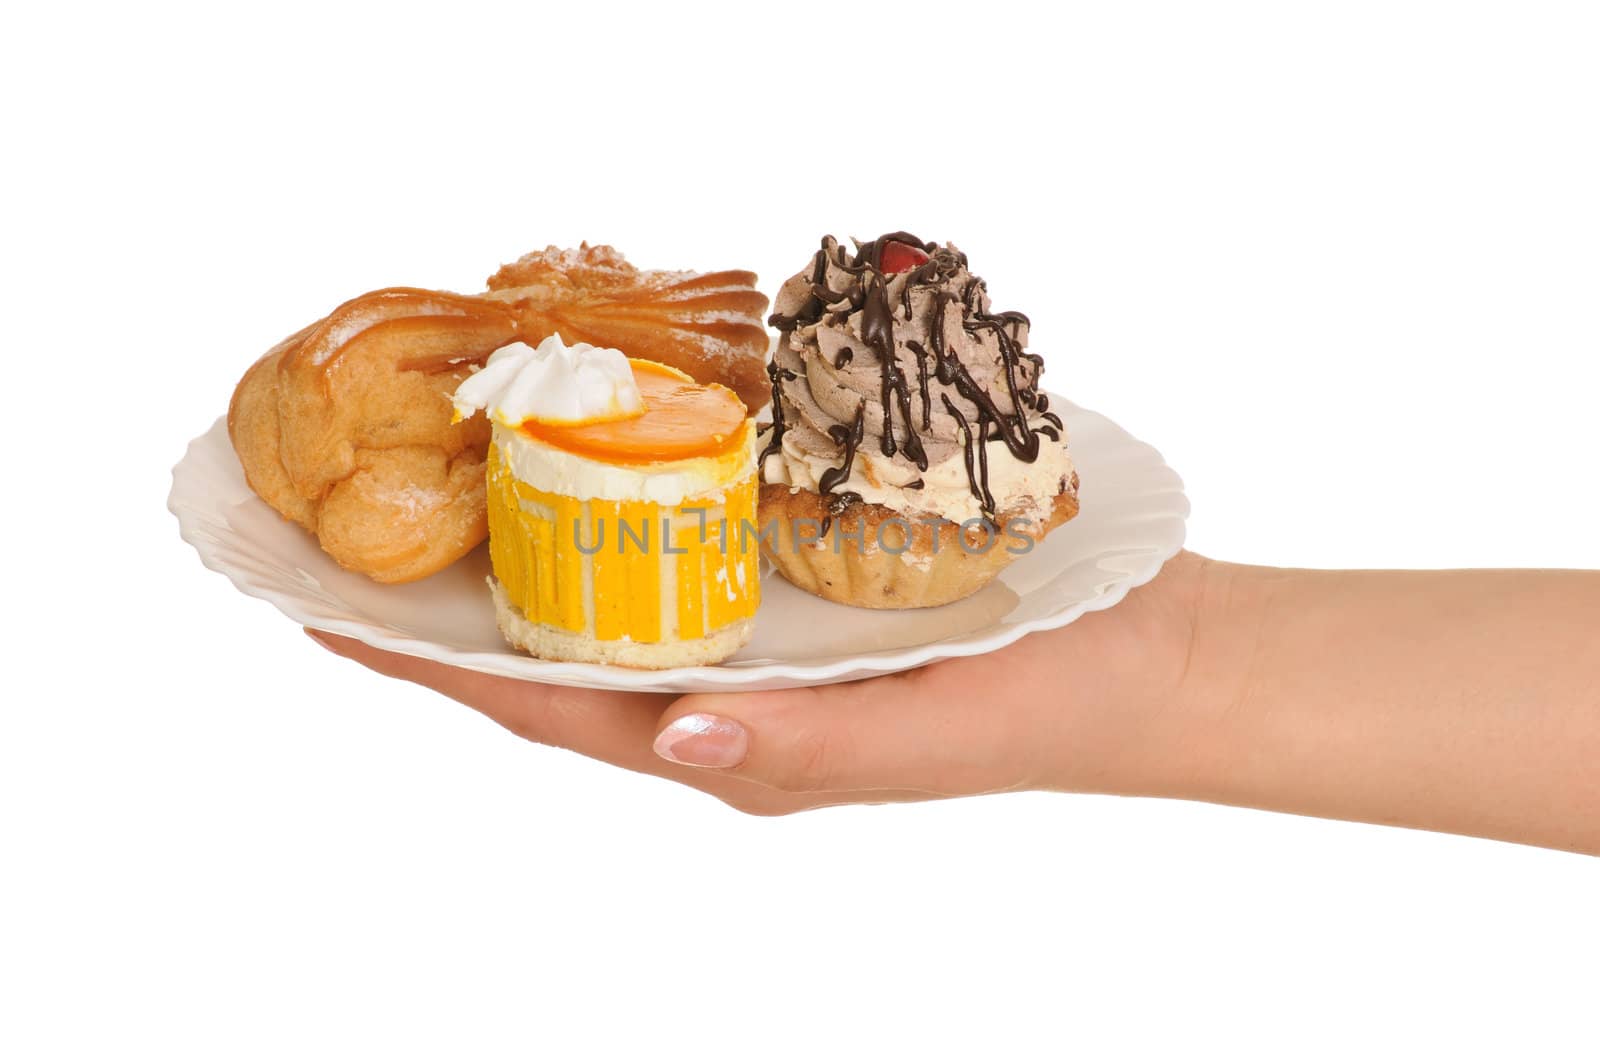 sponge-cake on plate isolated on white background